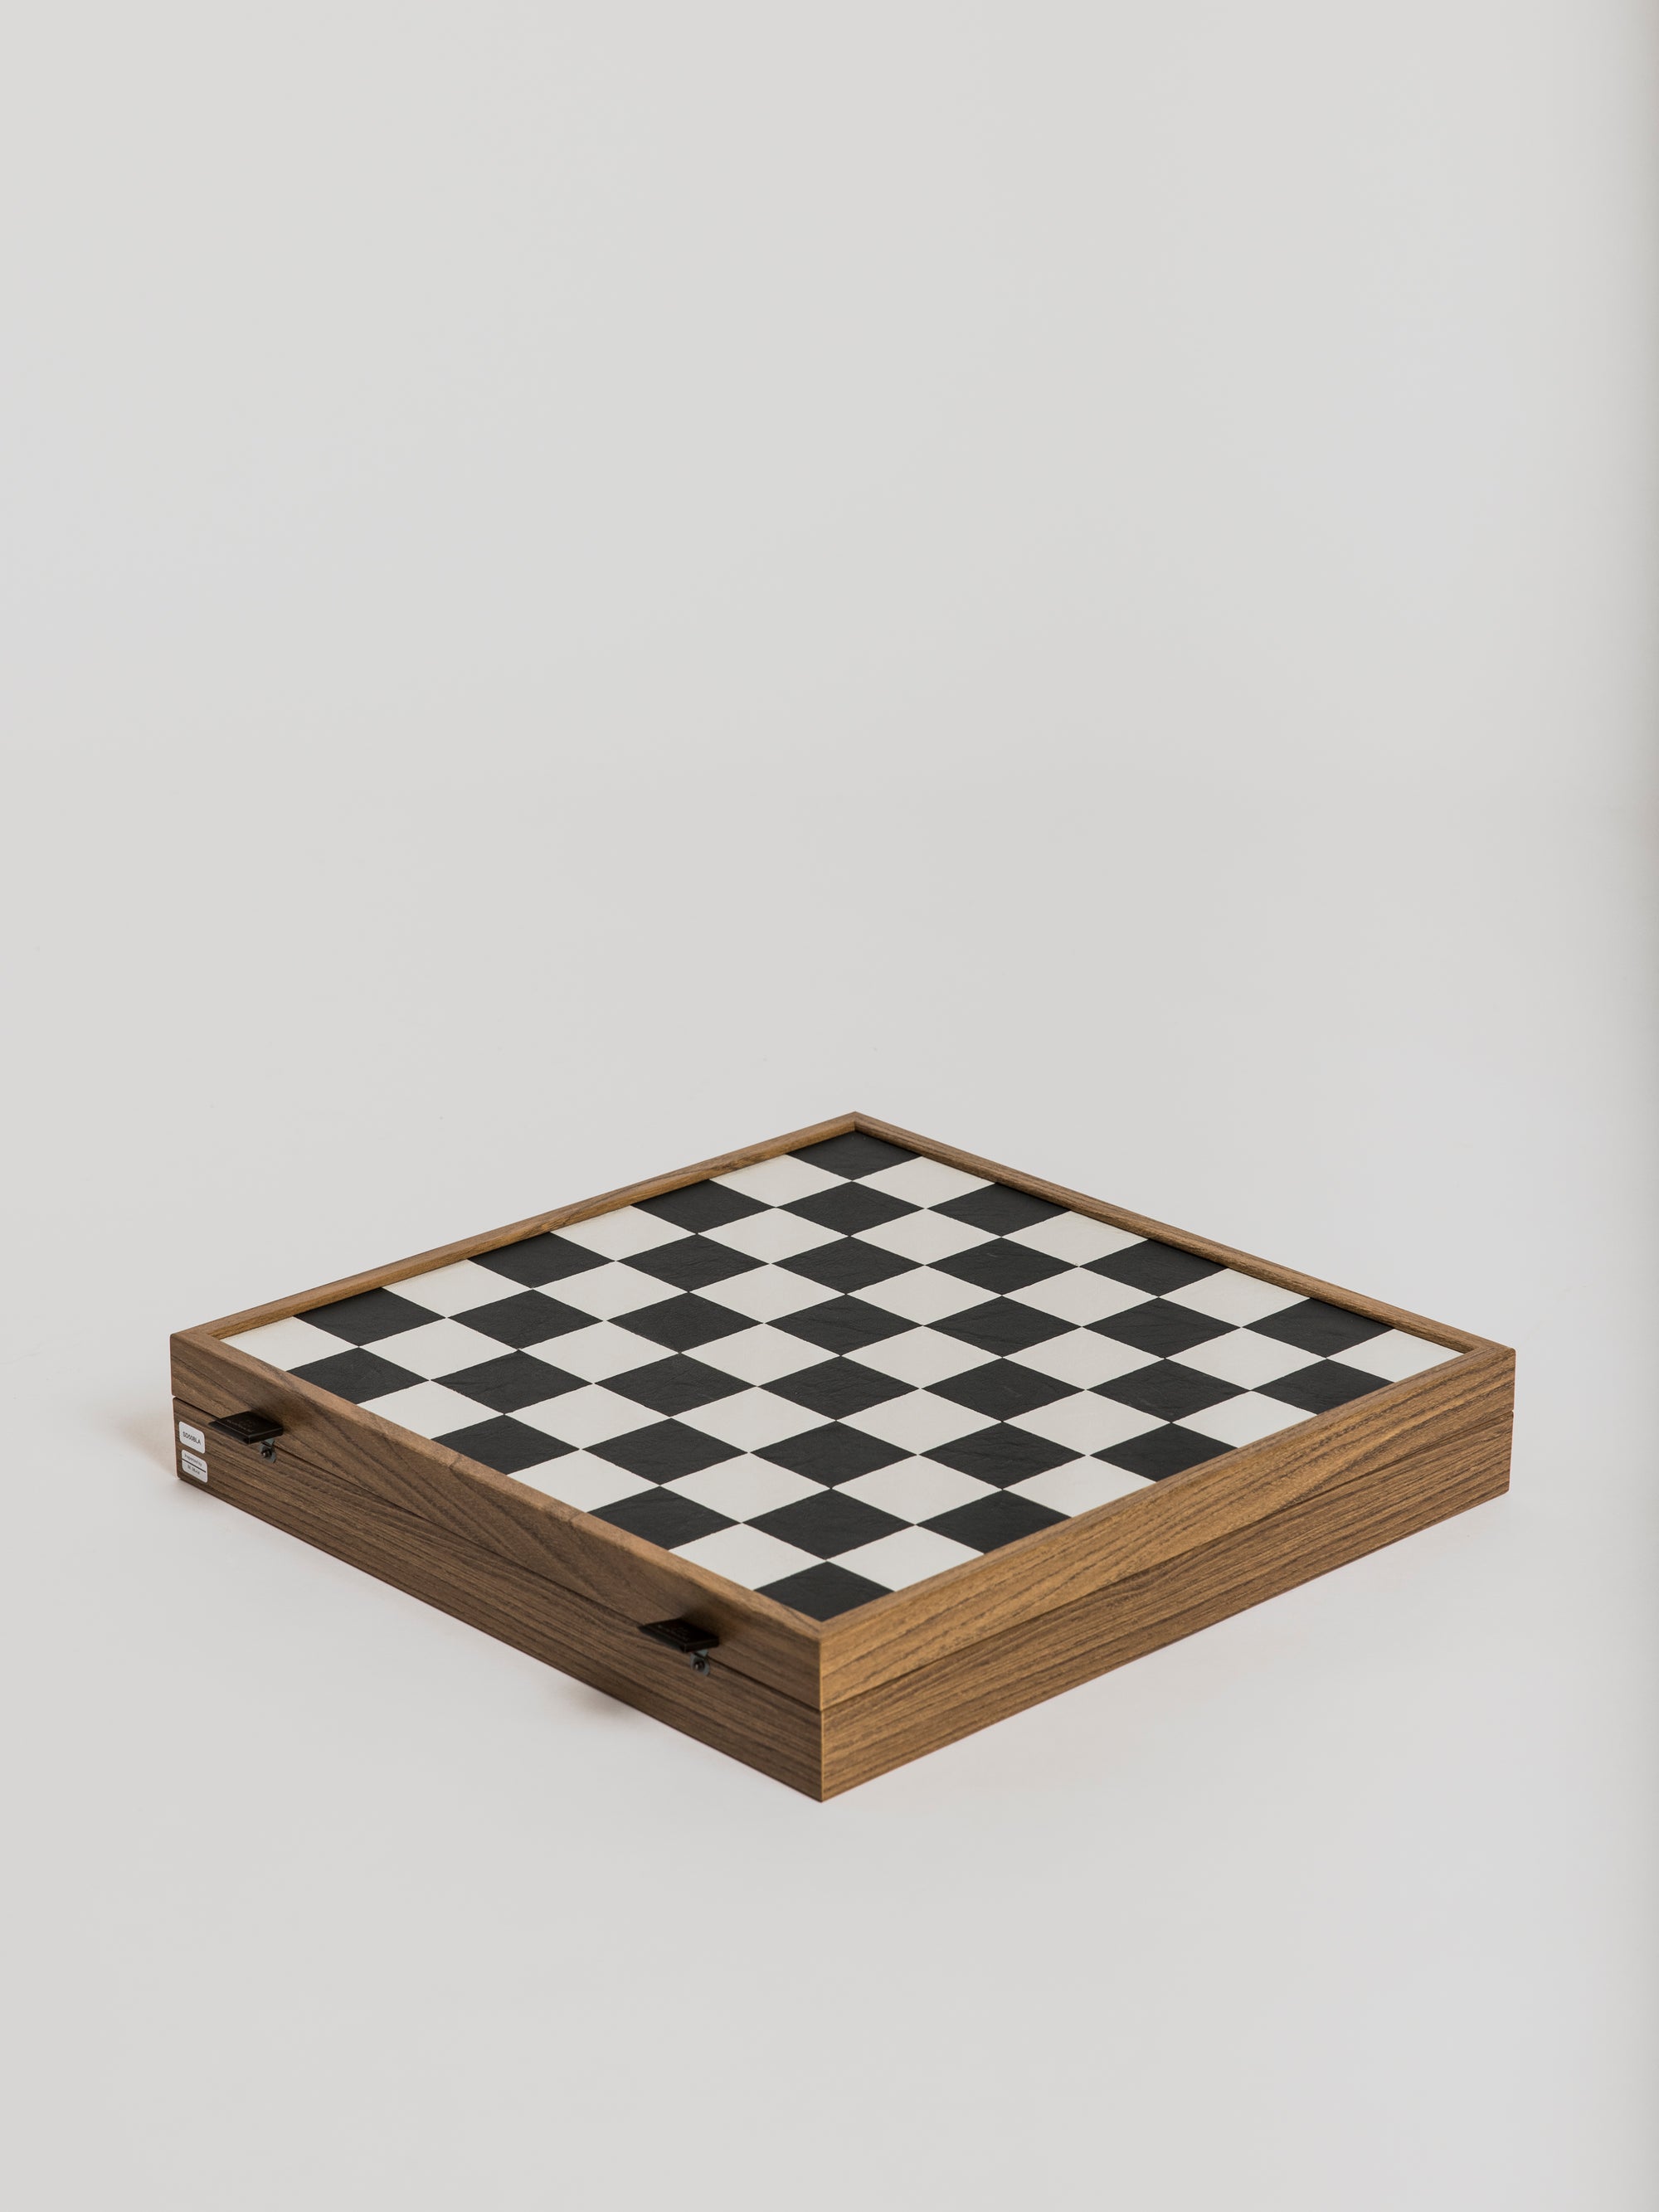 Chessboard - Back & White Letherette - Cigale et Fourmi